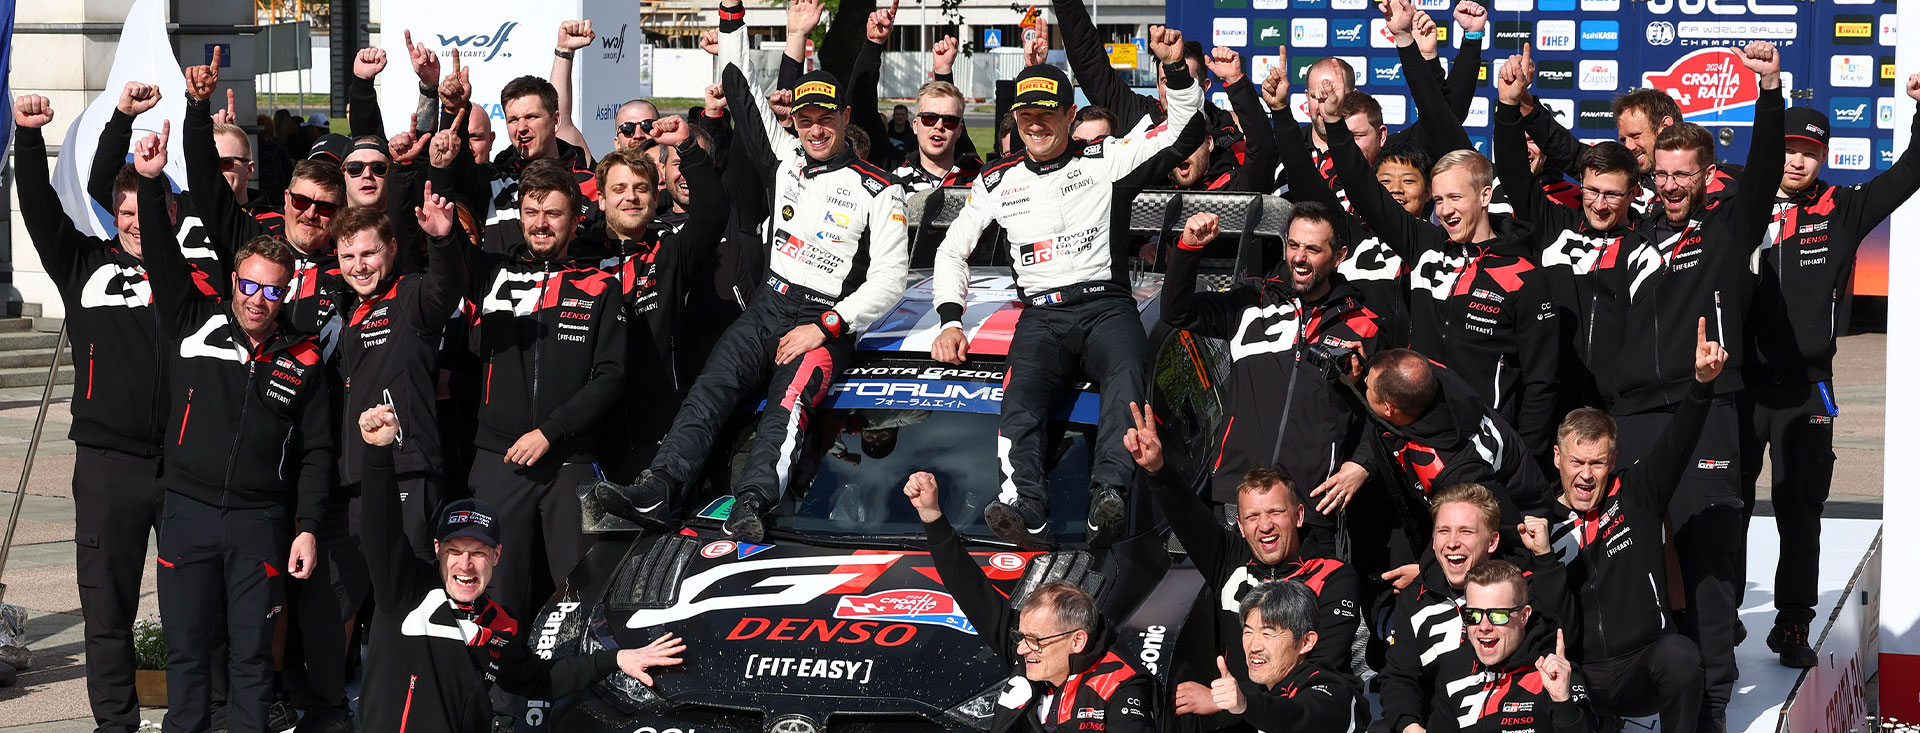 WRC 第4戦 クロアチア・ラリー 大波乱のクロアチア・ラリー最終日、オジエが今季初勝利を獲得 エバンスは総合2位、総合5位の勝田はスーパーサンデーを制す